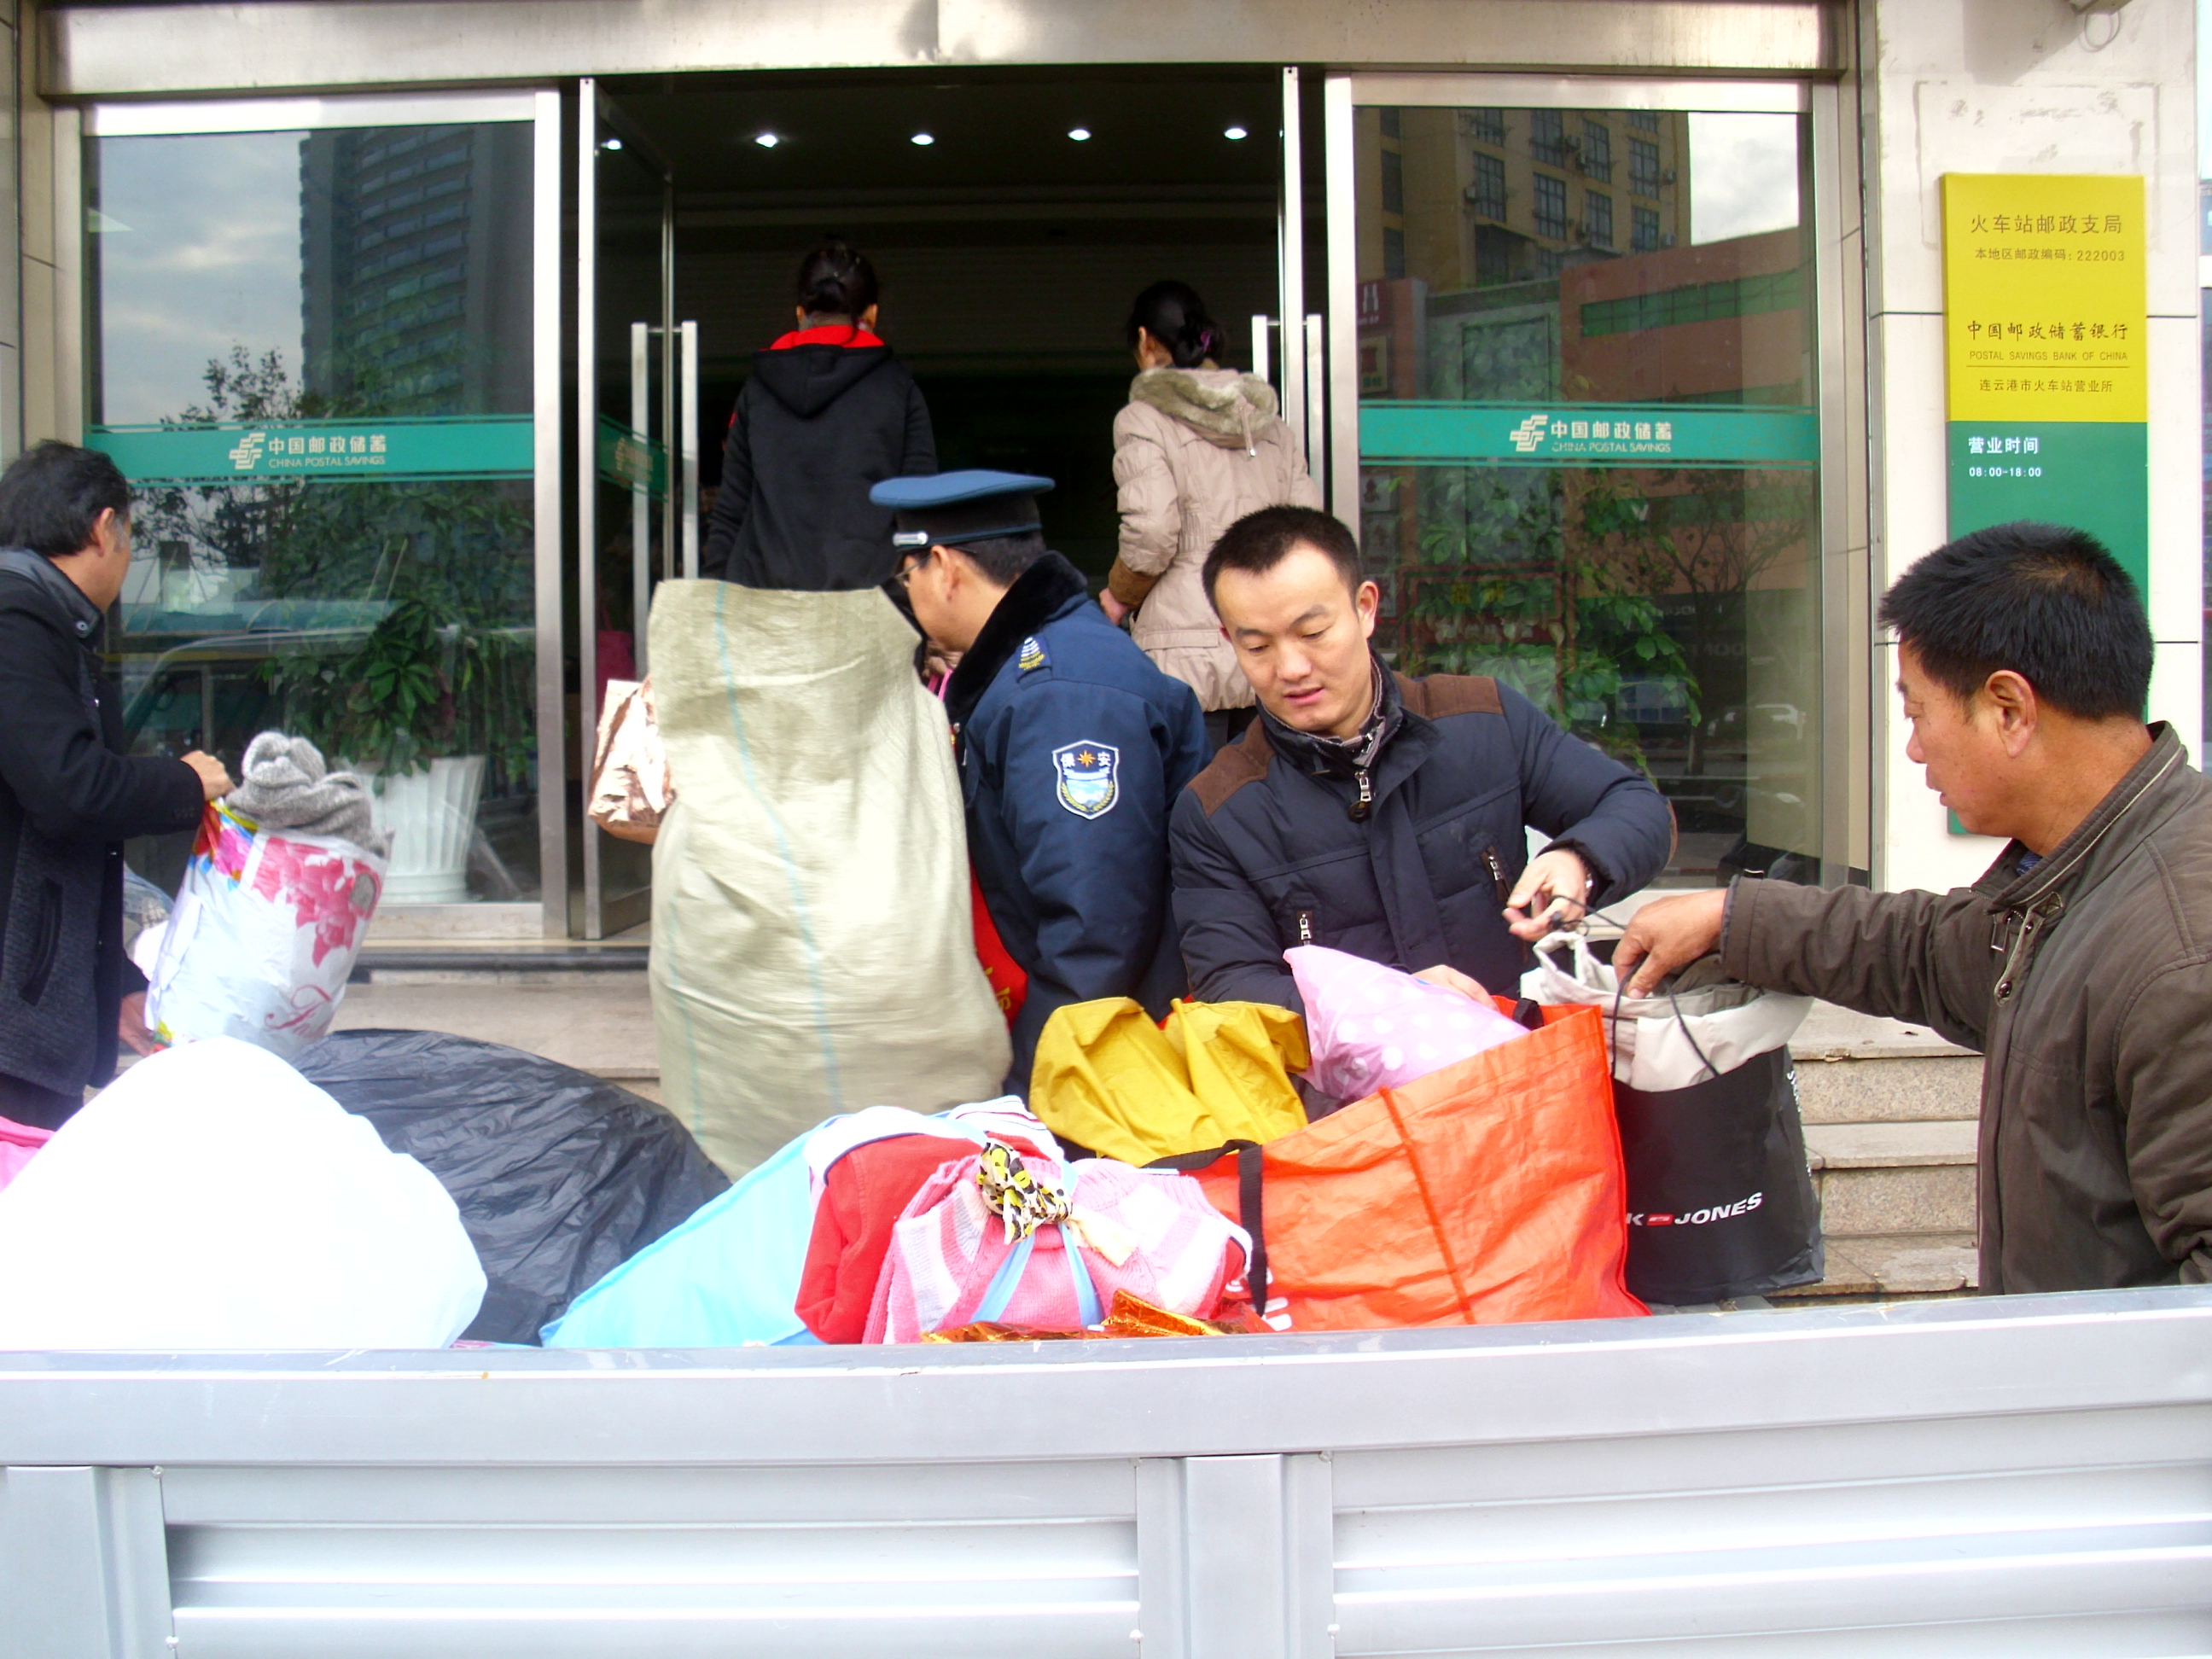 市邮政公司联合连云港志愿者联盟开展捐赠冬衣